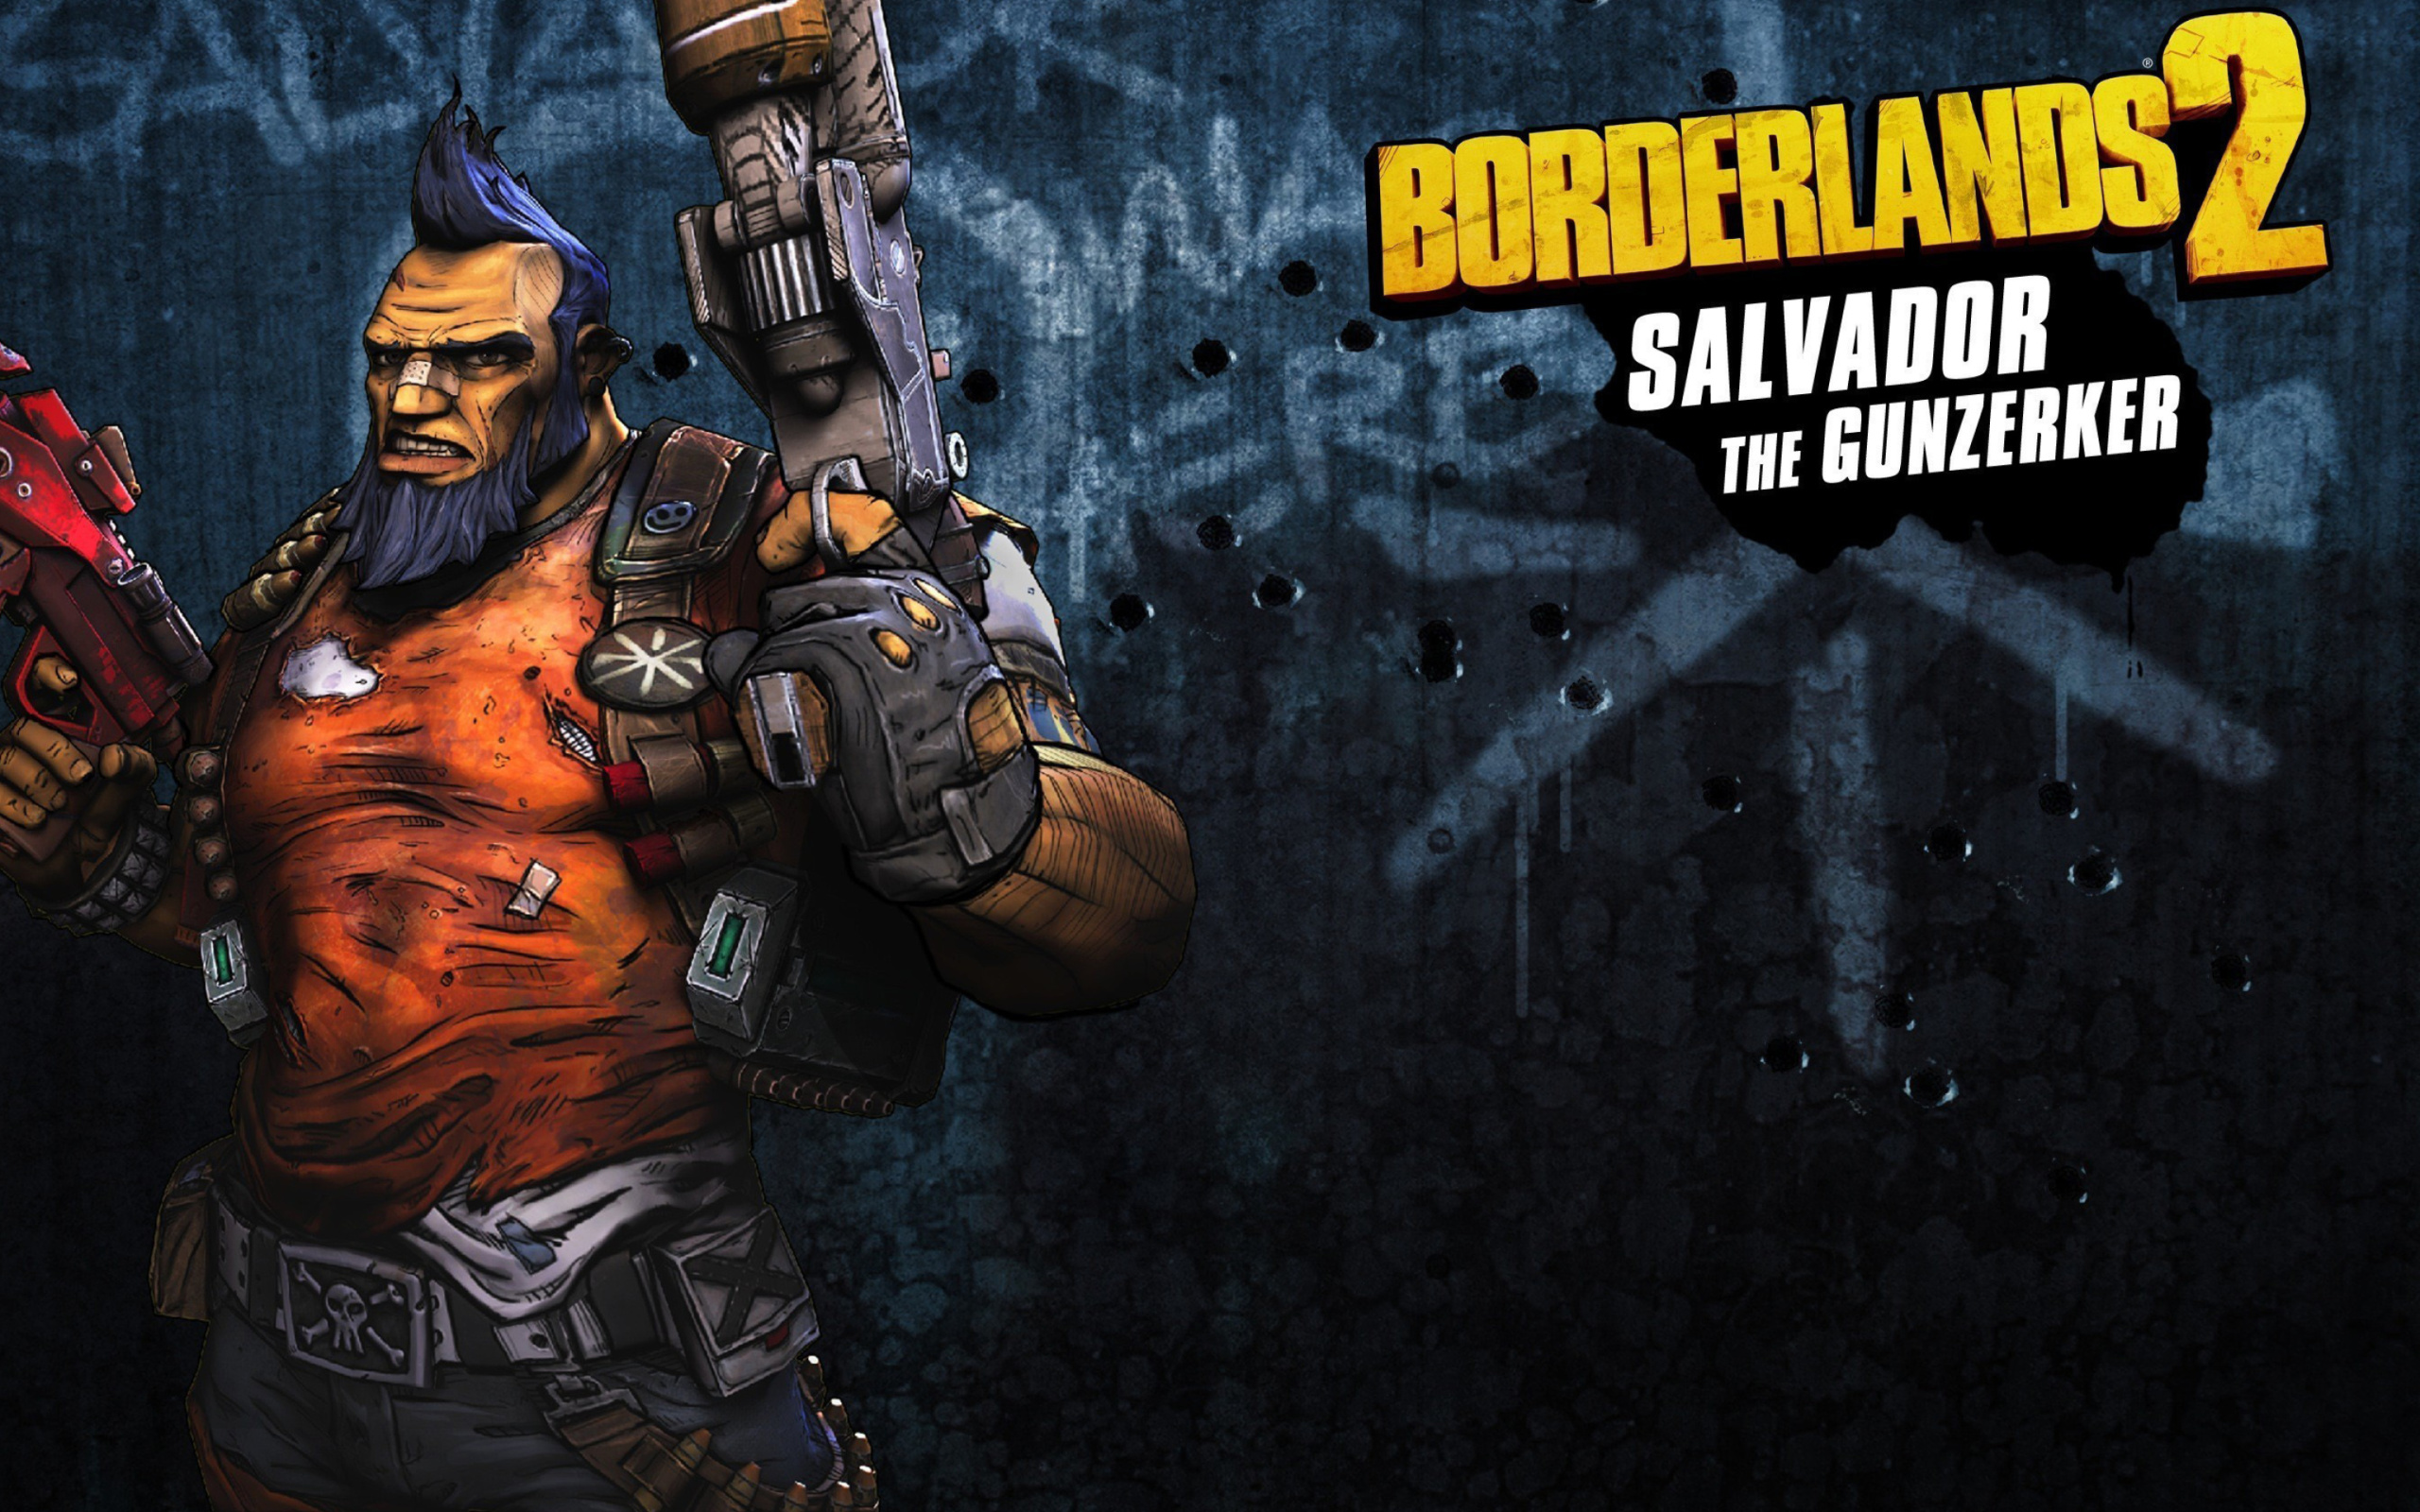 Das Salvador the Gunzerker, Borderlands 2 Wallpaper 2560x1600